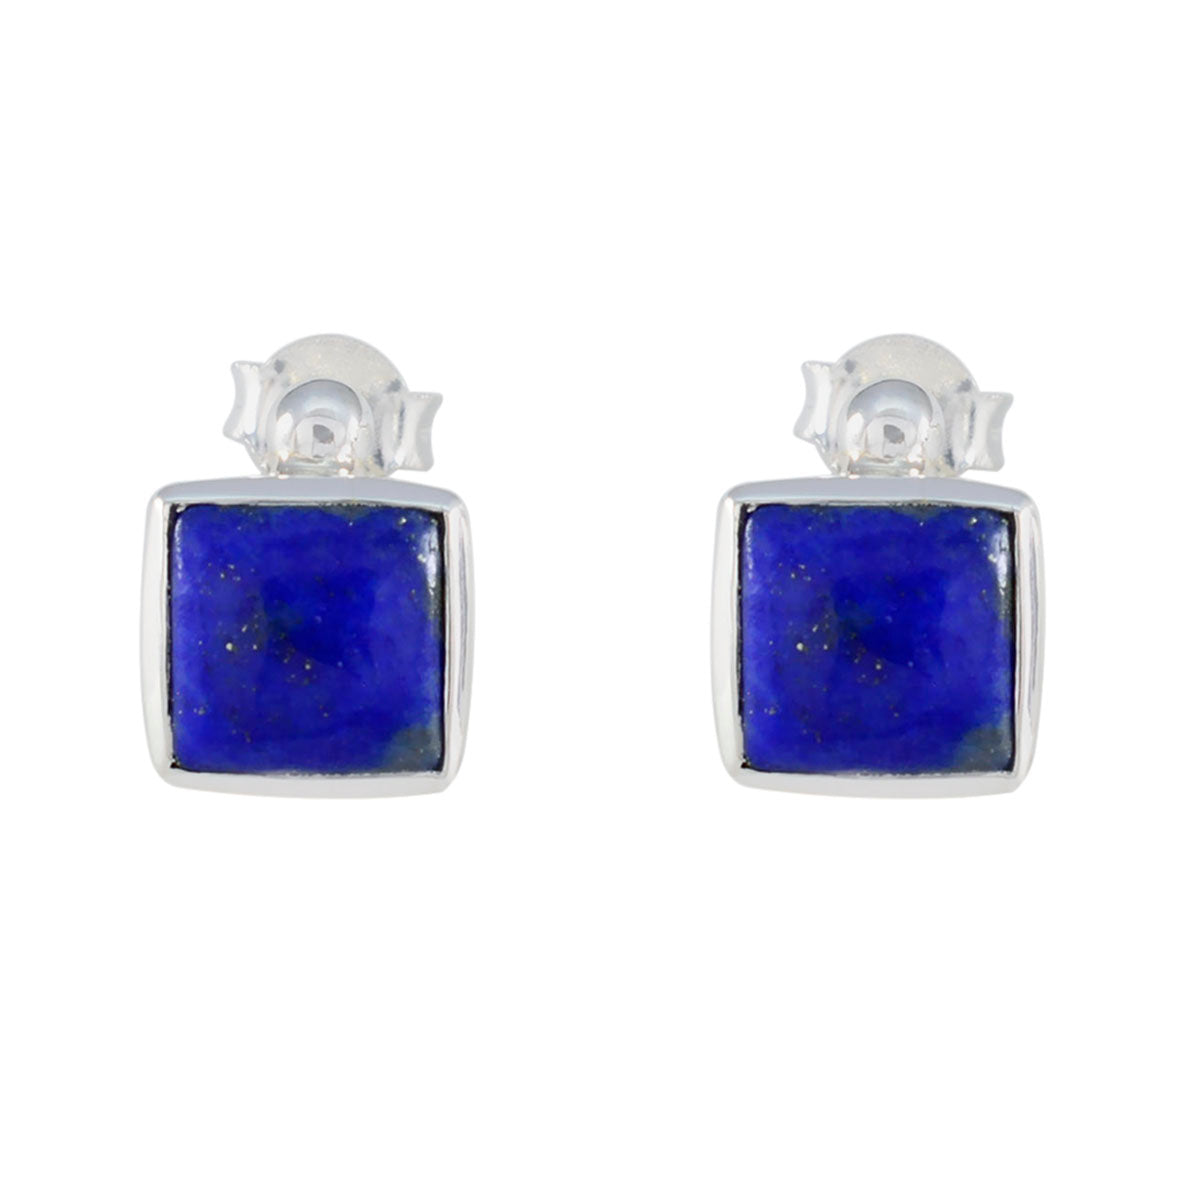 Riyo Herrlicher Sterlingsilber-Ohrring für Damen, Lapislazuli-Ohrring, Lünettenfassung, blauer Ohrring-Bolzen-Ohrring